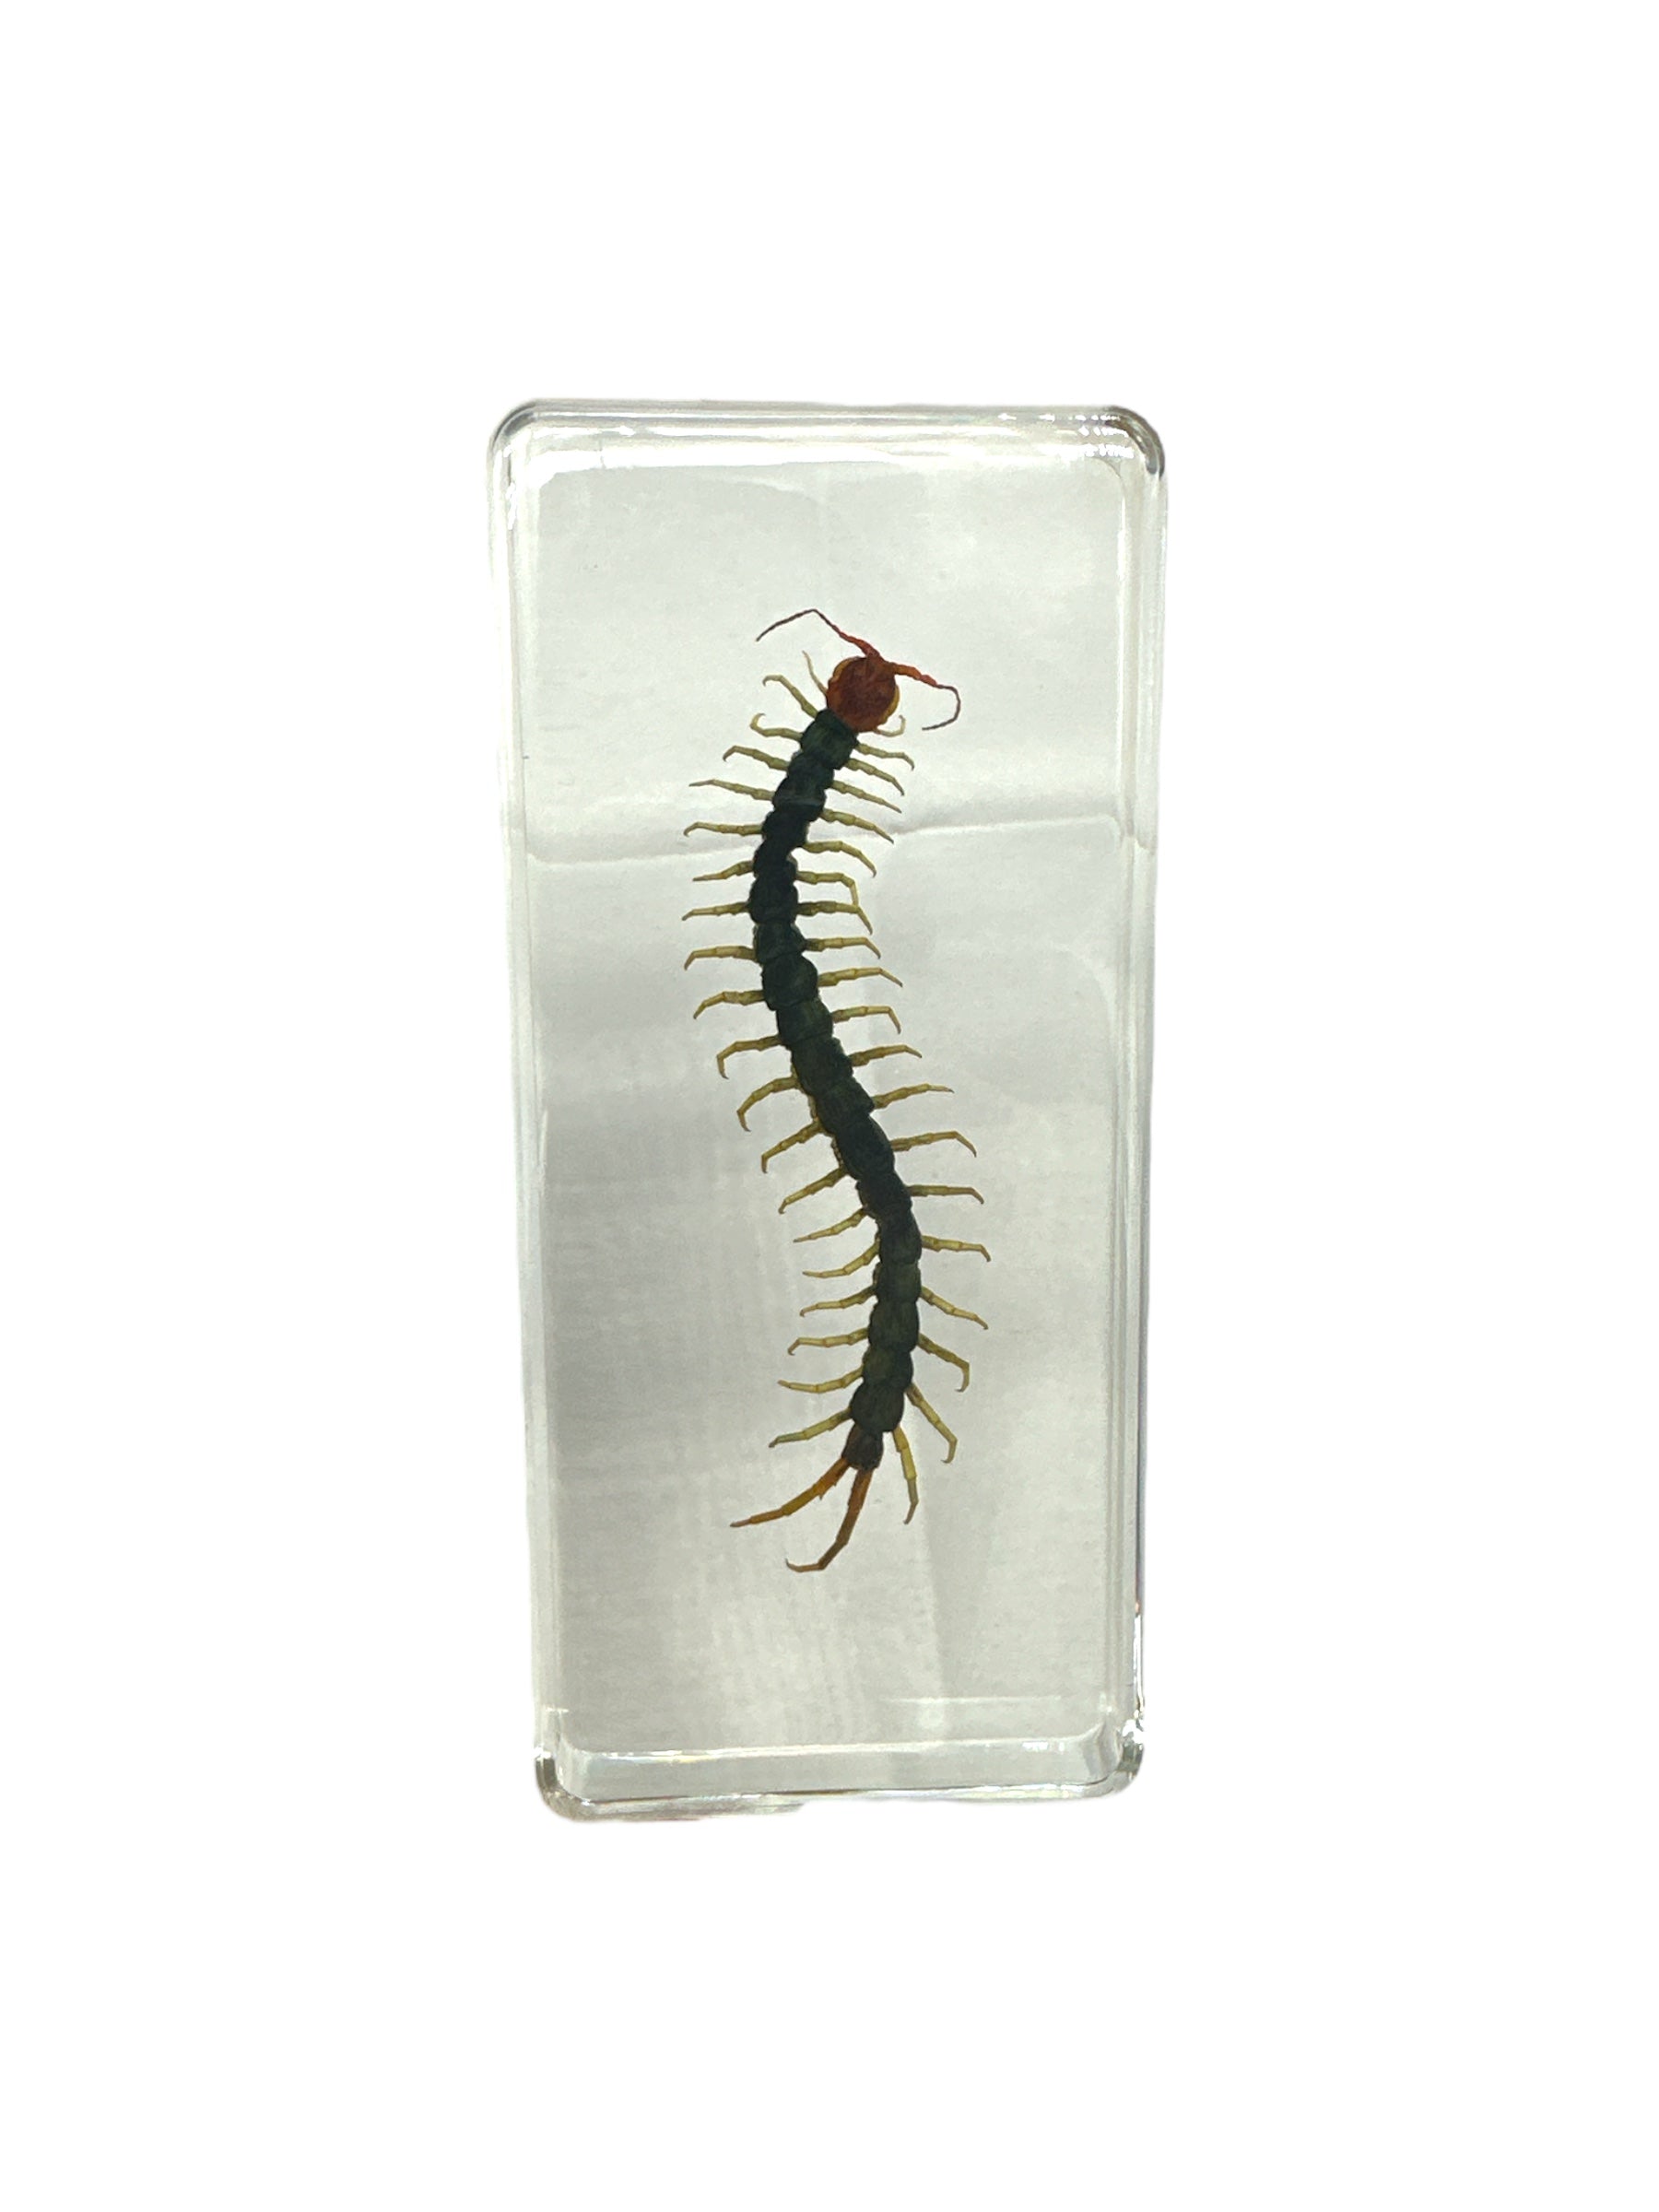 Centipede - Specimen In Resin